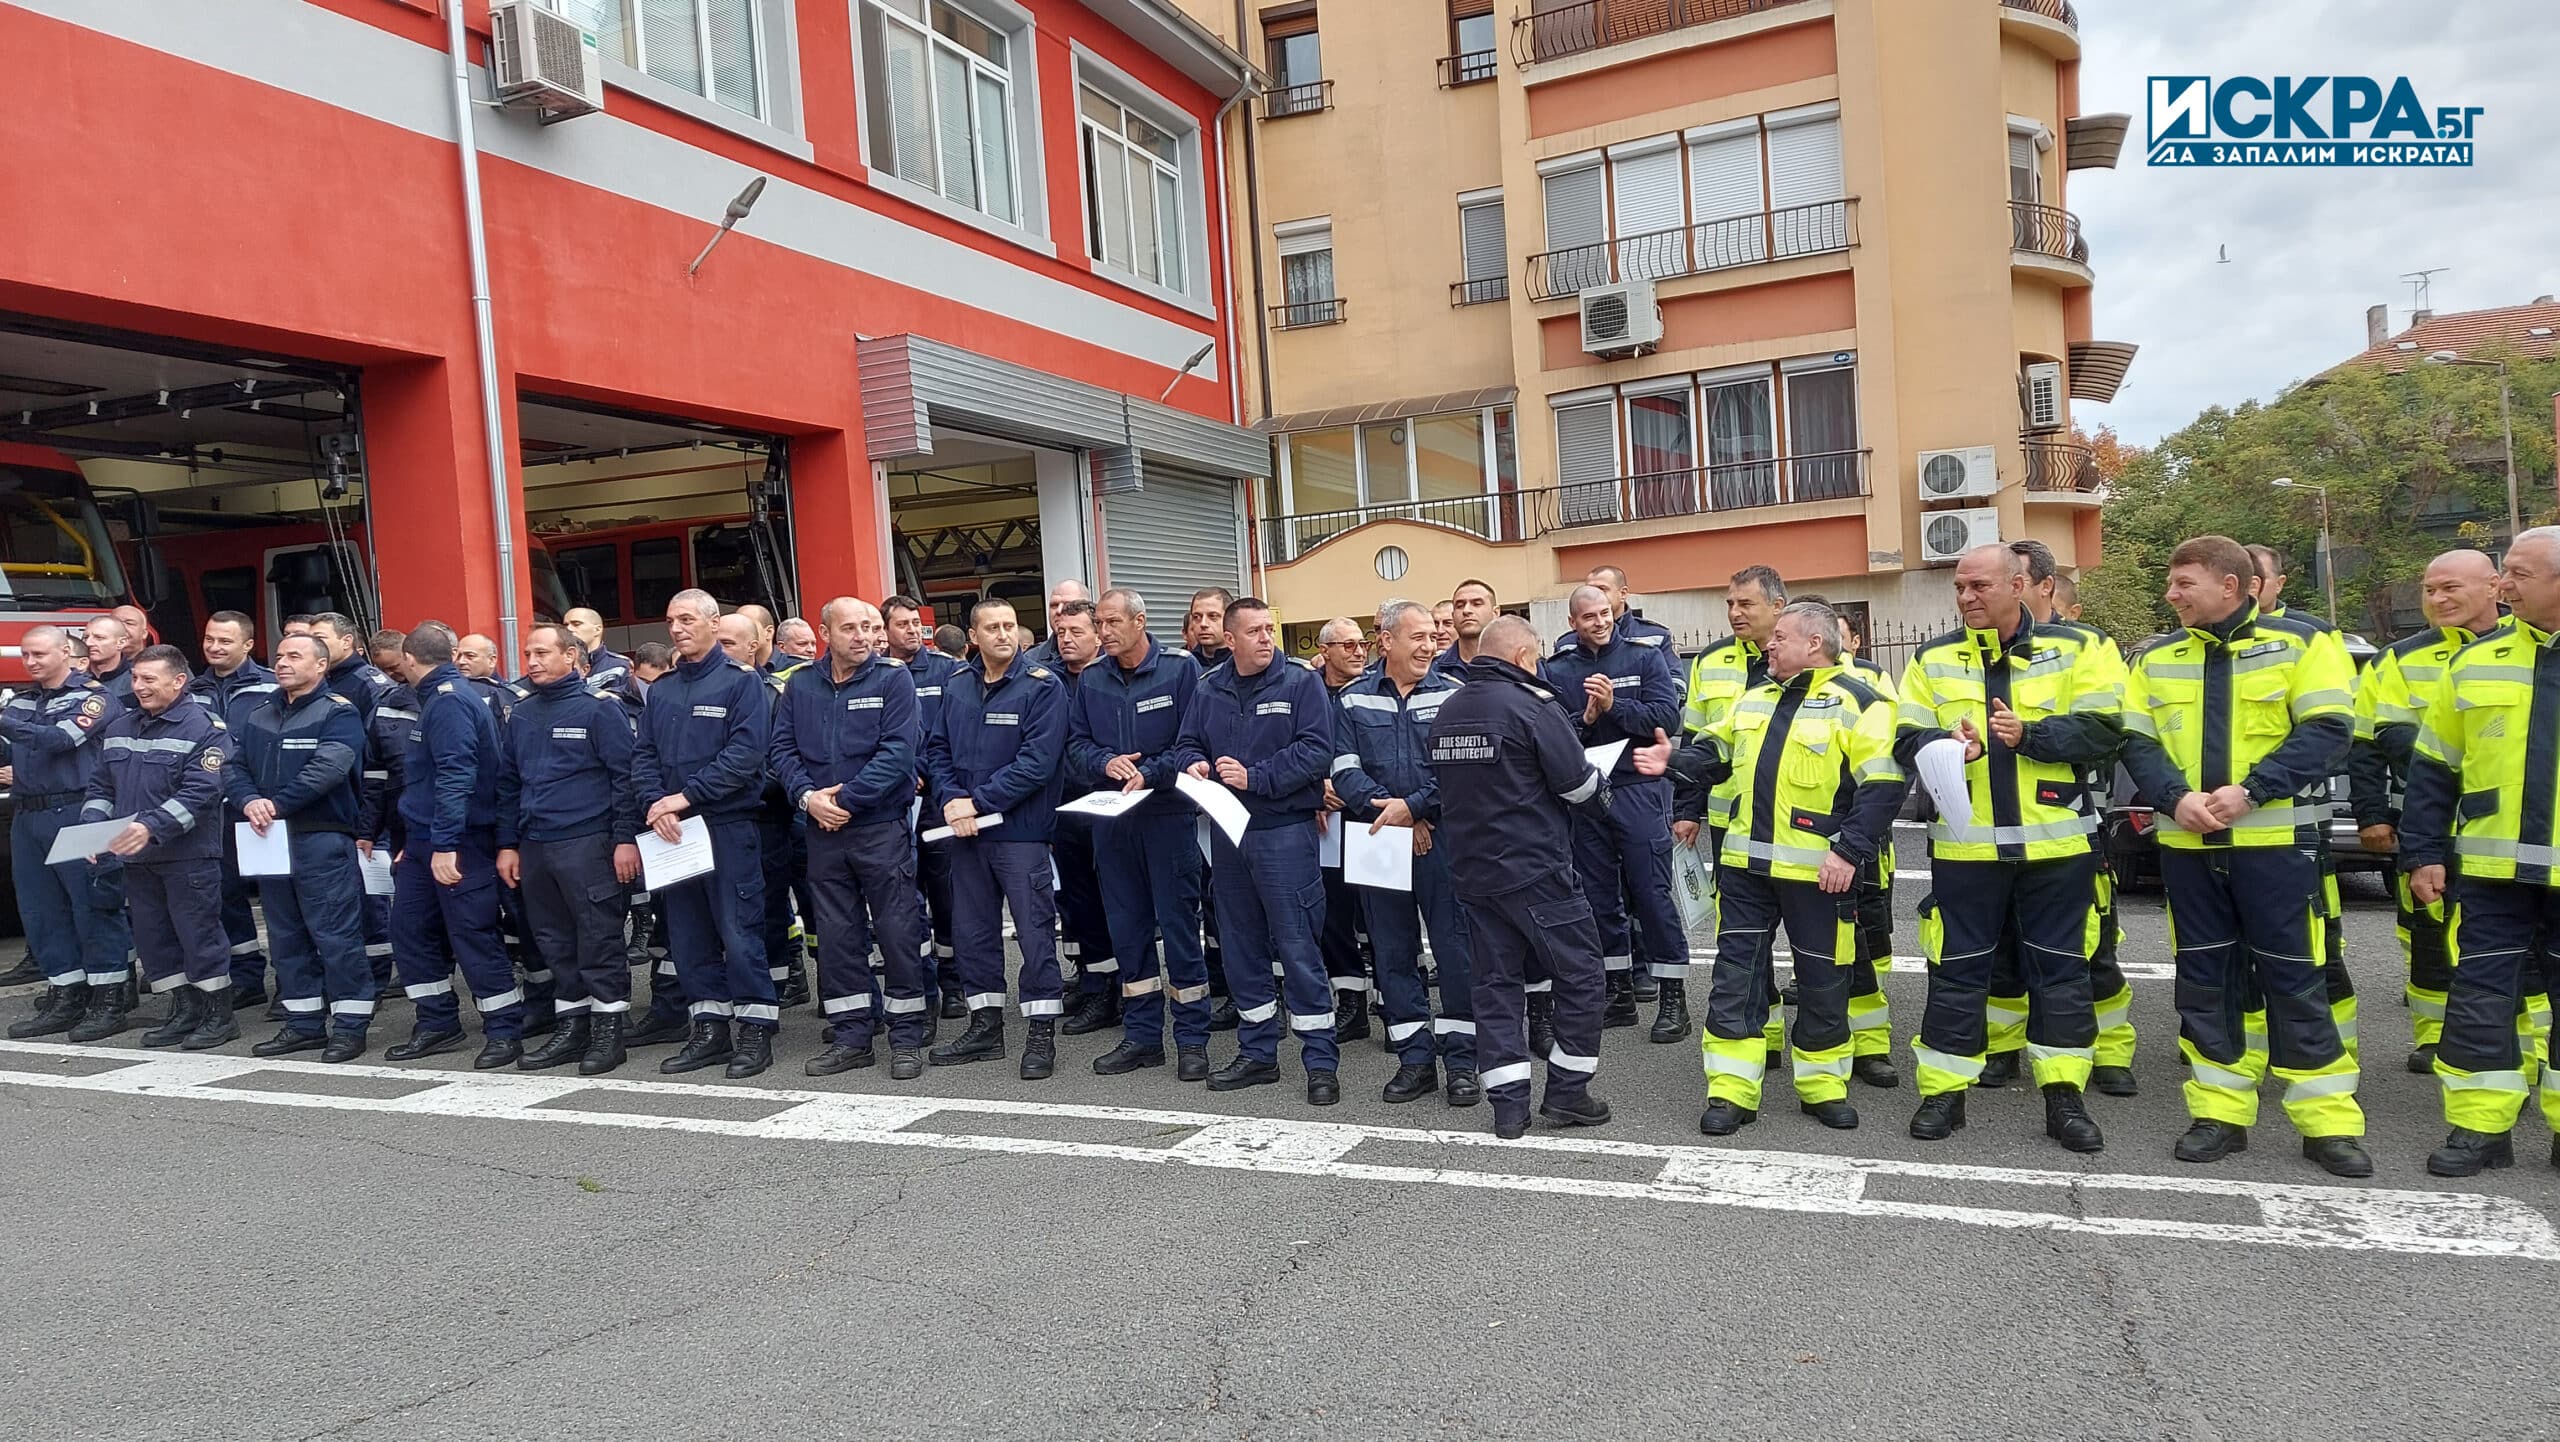 Награждаване на пожарникари Снимка Искра бг
93 ма огнеборци от Бургас получиха заслужени